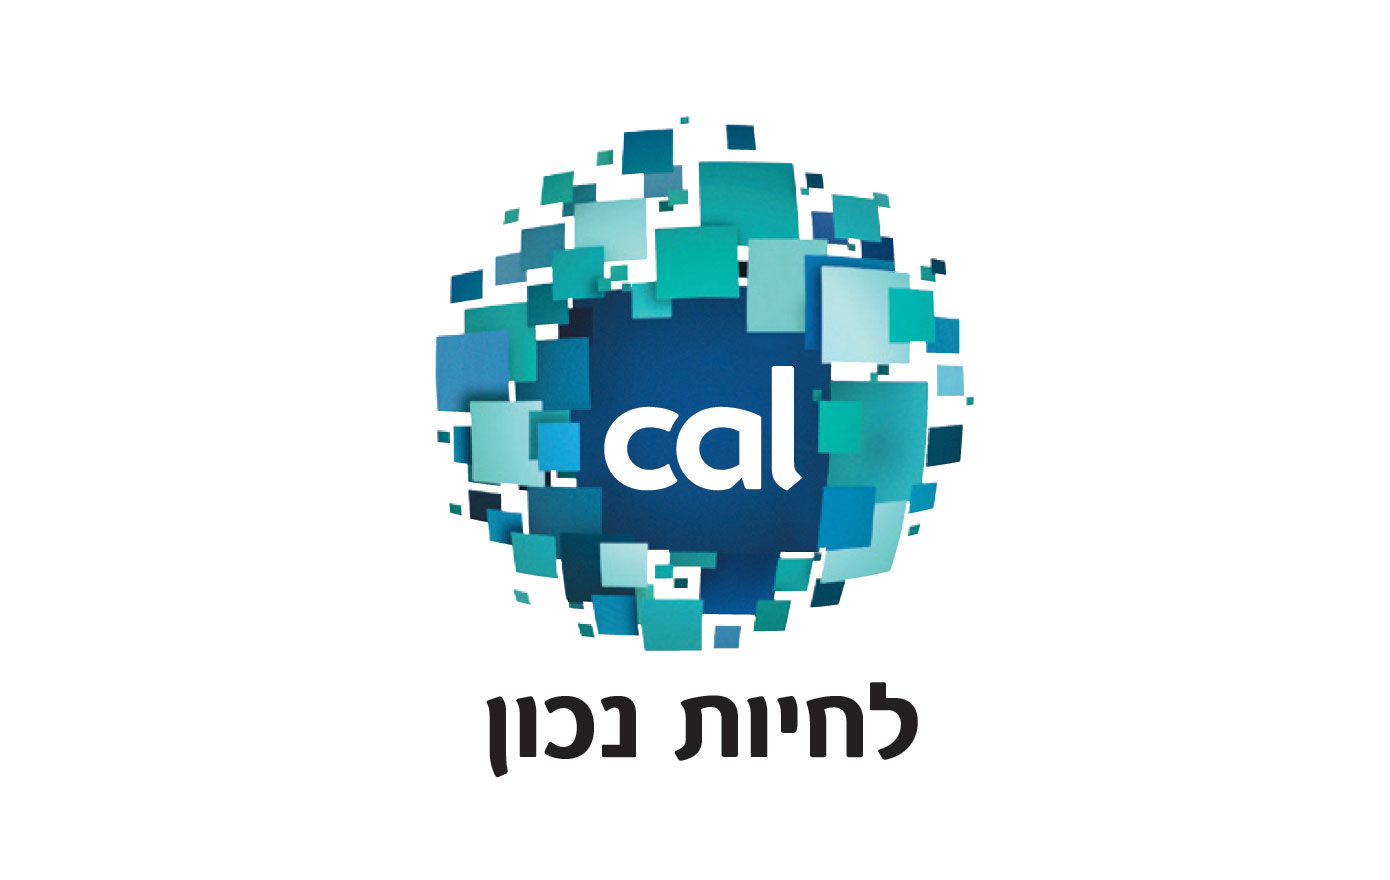 以色列信用卡公司——Cal logo设计